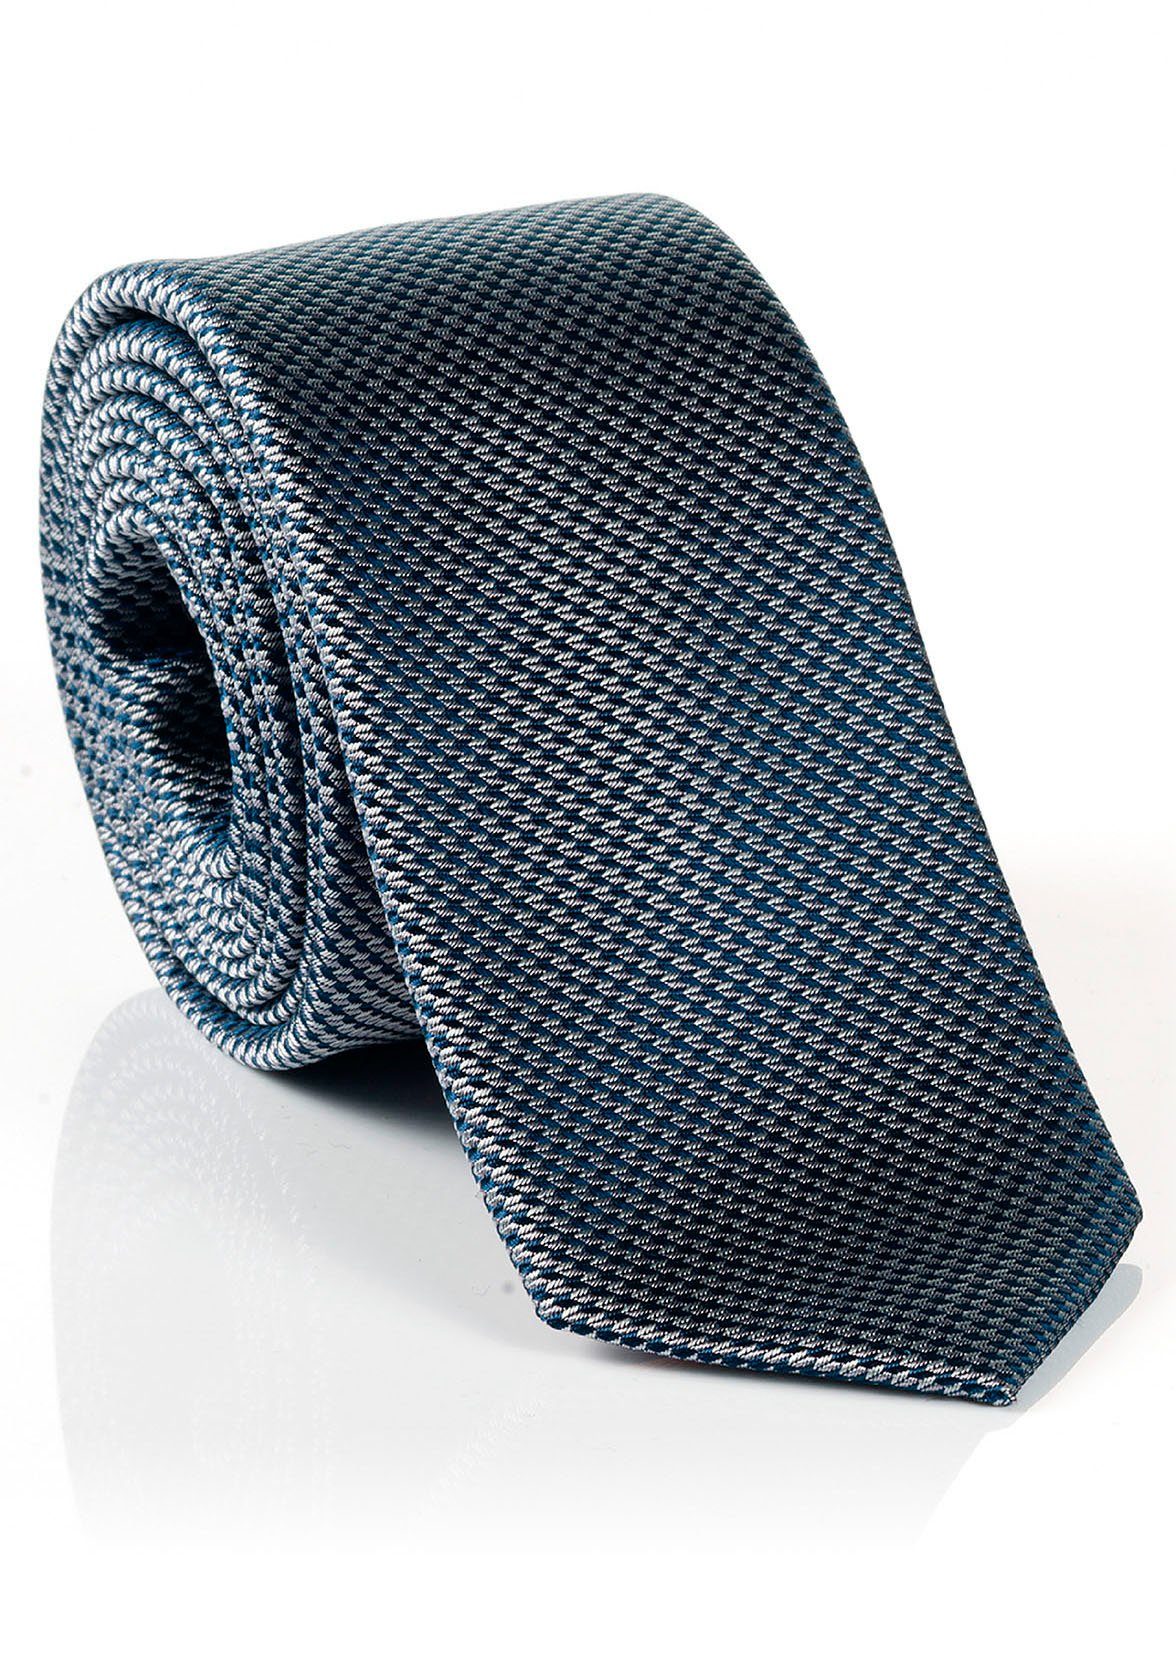 MONTI Krawatte LANDO Seide, Tragekomfort Reine mit hohem Seidenkrawatte Minimal-Muster, verarbeitete Hochwertig